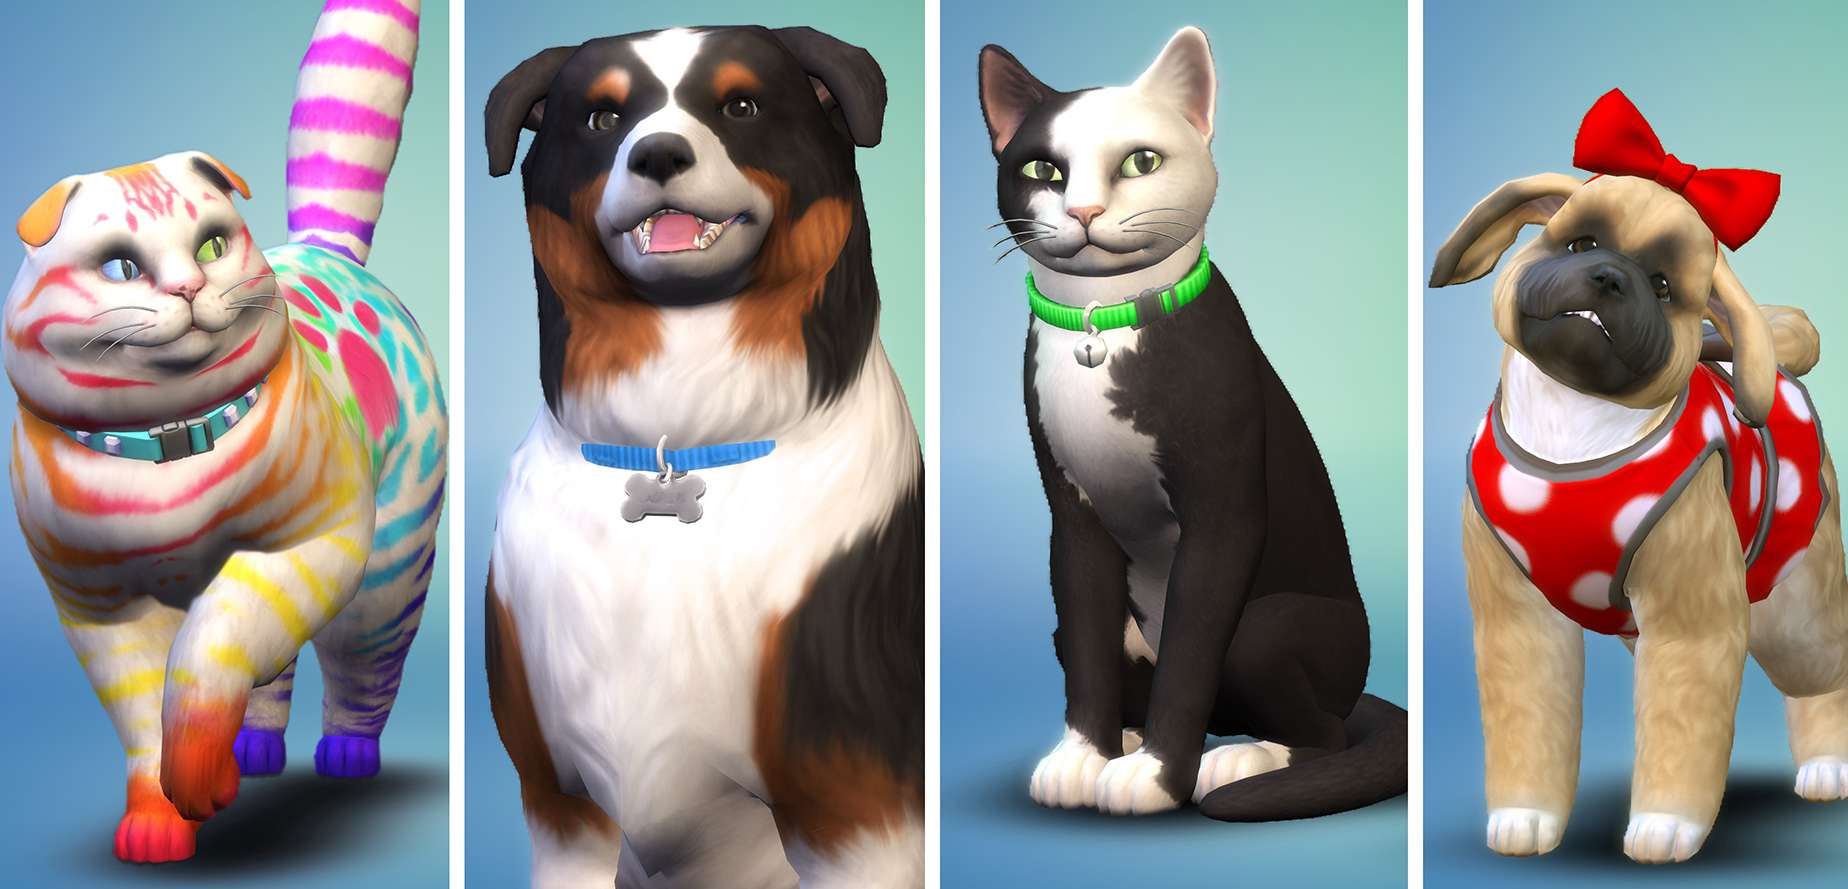 The Sims 4 Dodatek Psy I Koty The Sims 4: Psy i Koty trafią na konsole. Dodatek za... 169 zł